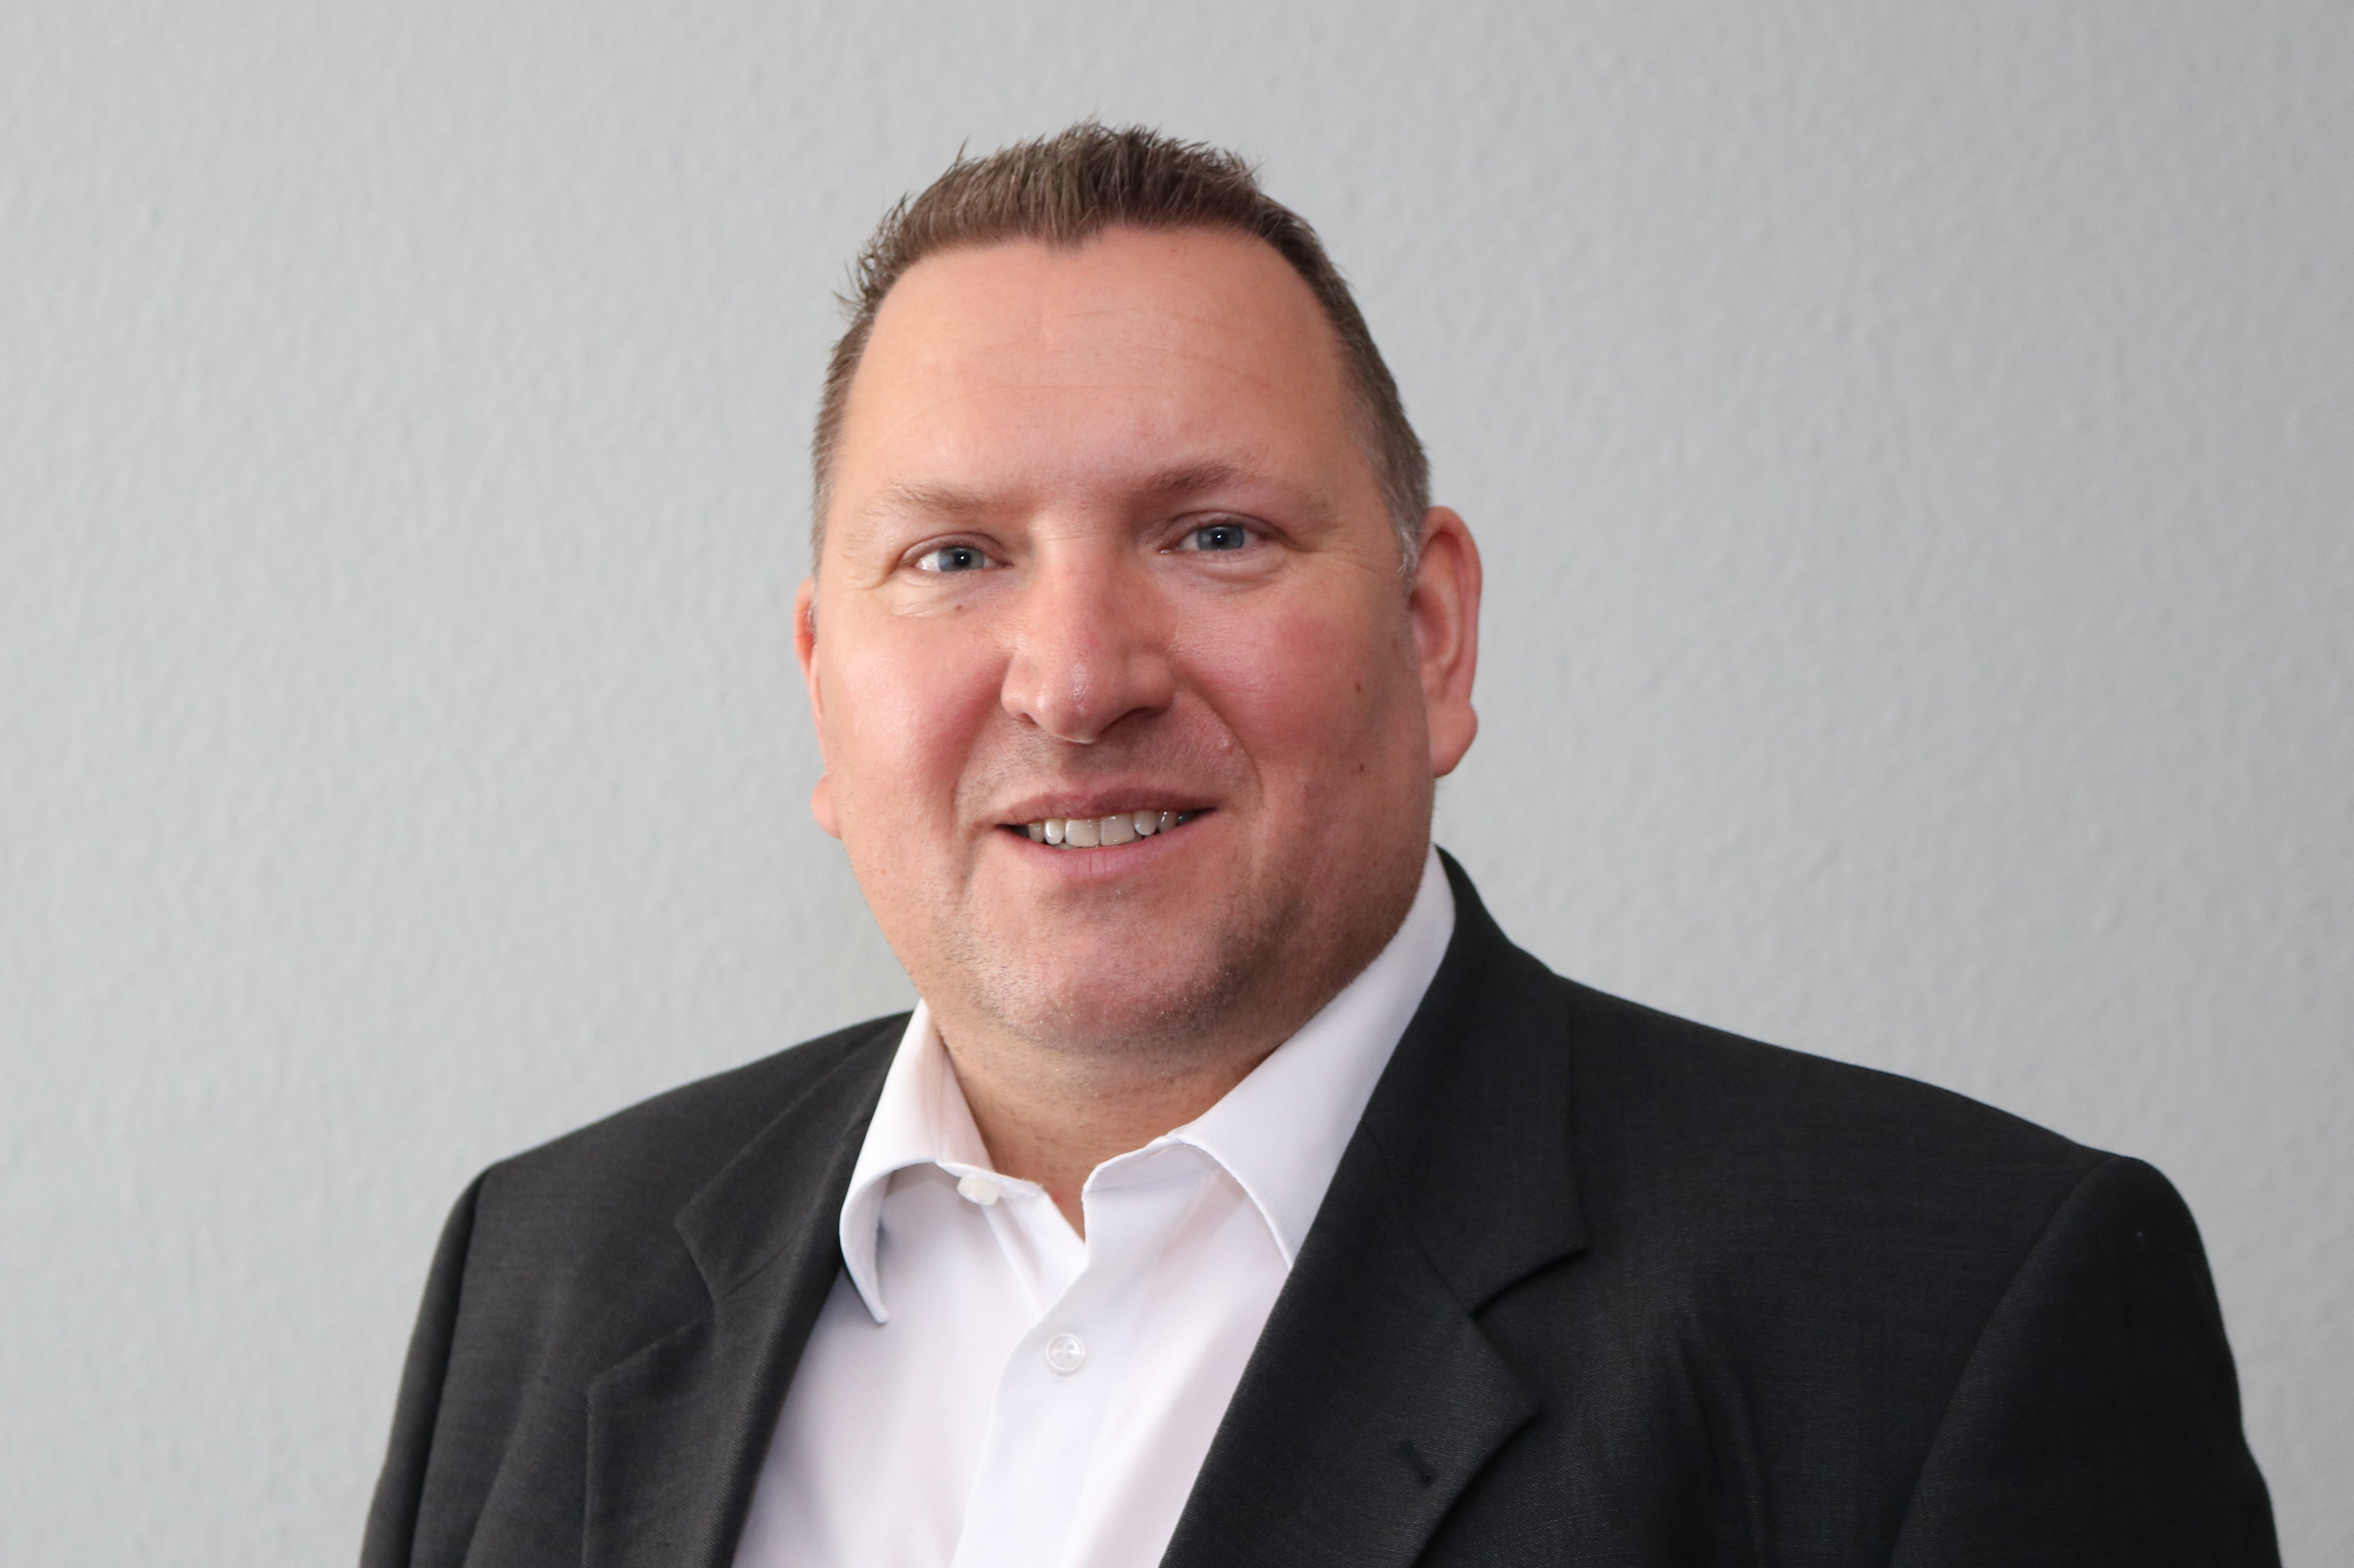 Seit dem 1. Mai ist Sören Krieghoff neuer Leiter des Geschäftsbereichs Personal und Recht im Diakonie Service-Zentrum Oldenburg (DSO).